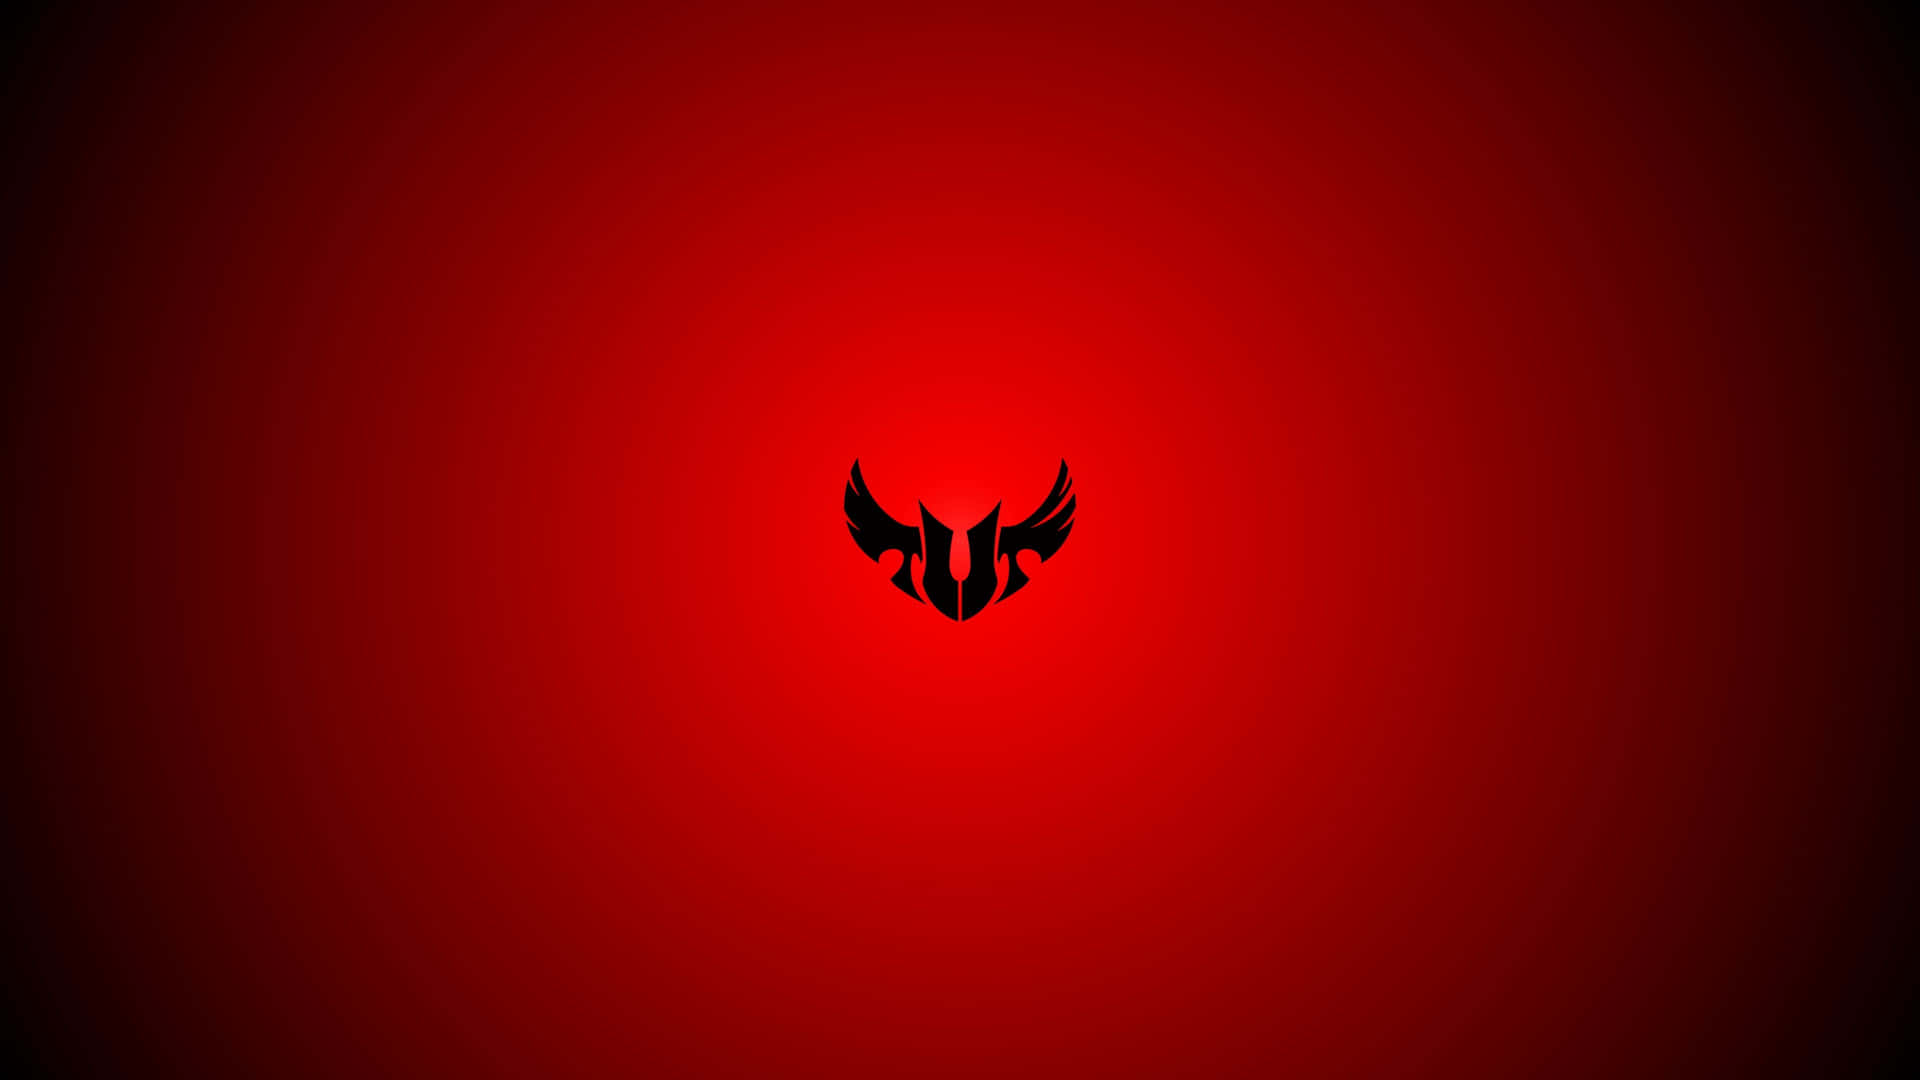 Asus T U F Gaming Logo Red Background